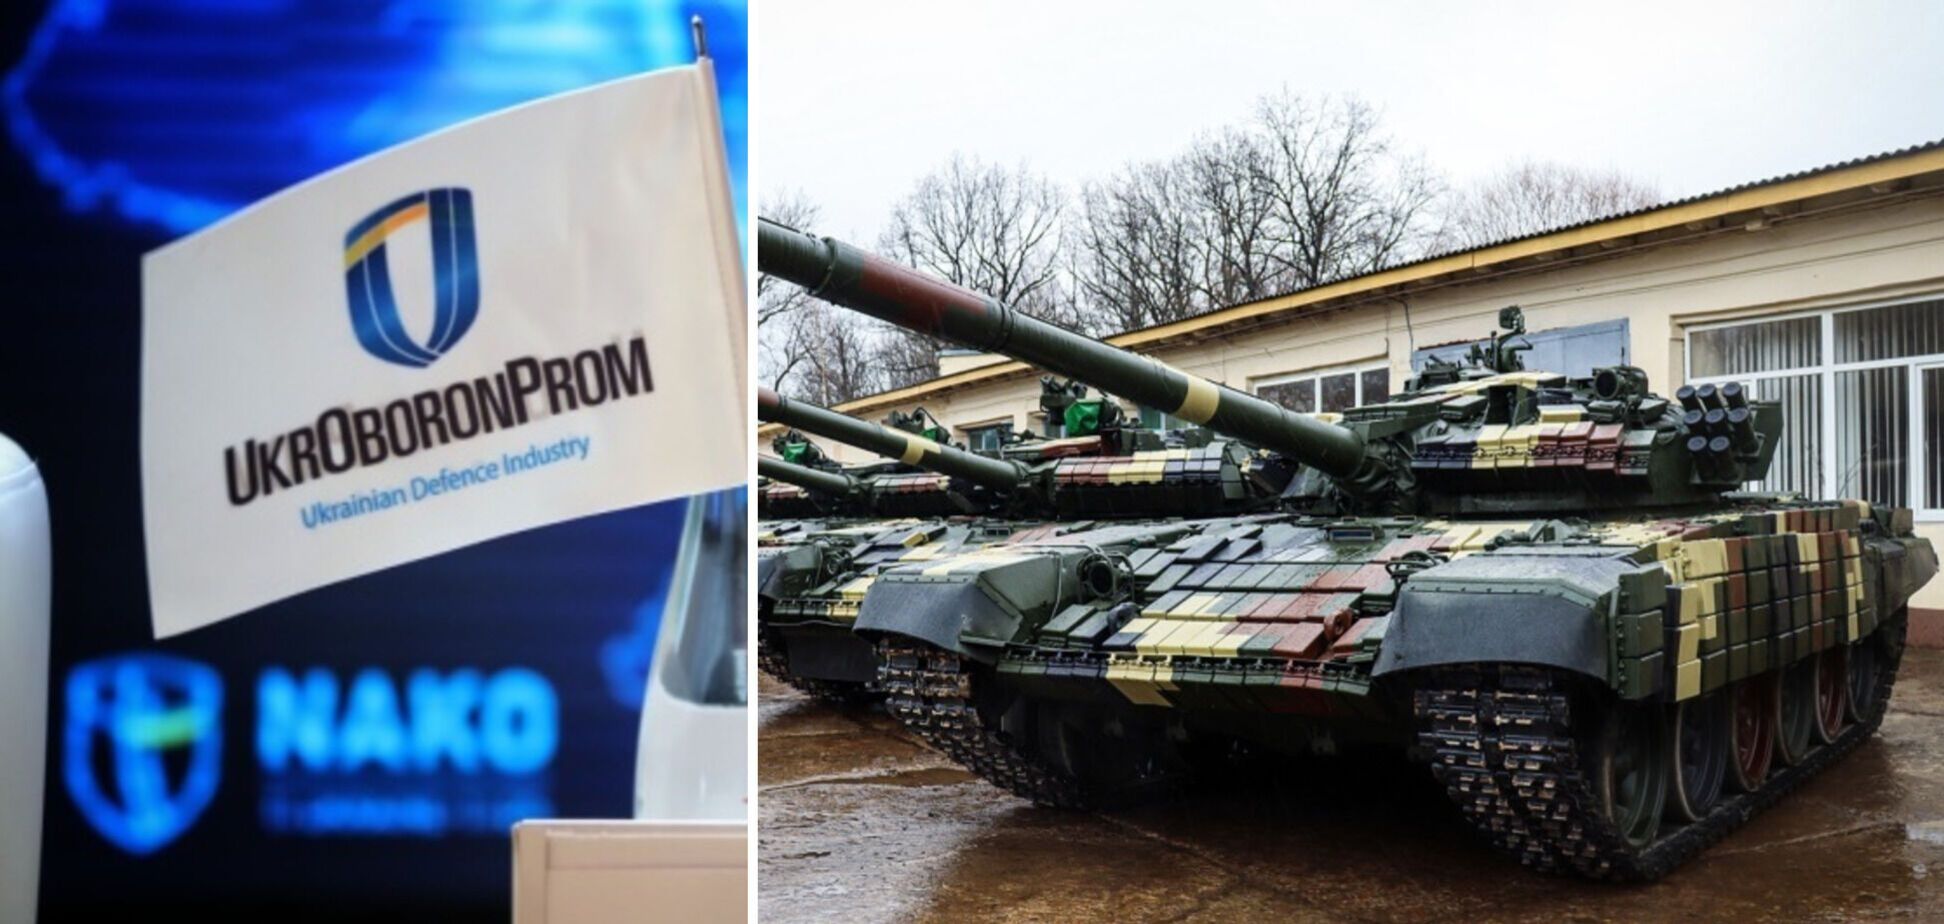 Коррупция в Укроборонпроме: теперь понятно, почему не выпускаются беспилотники и производится мало ракет и танков